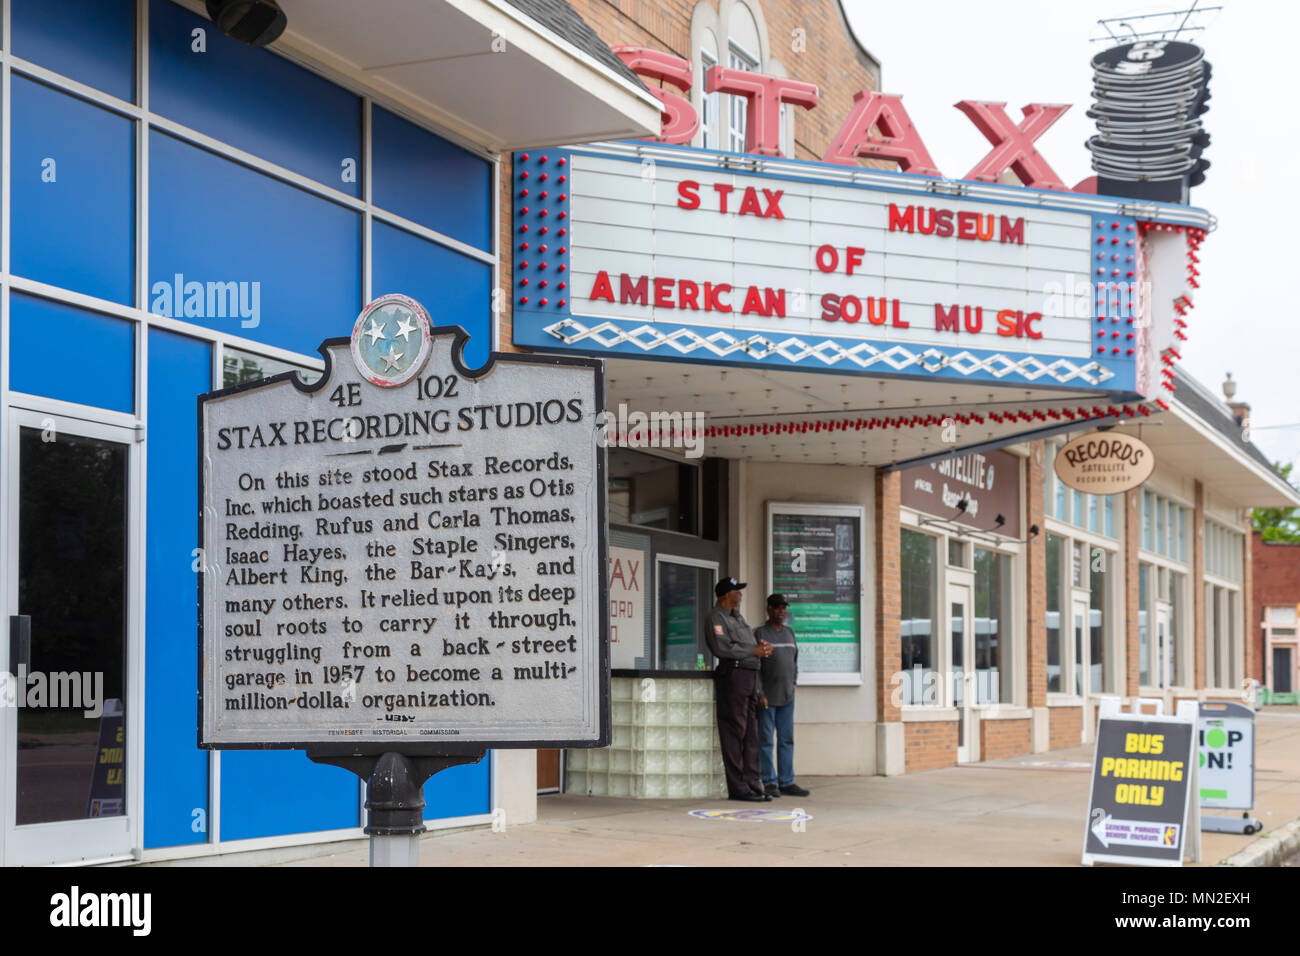 Memphis, Tennessee - El Stax Museum of American Soul Music, la antigua ubicación de Stax Records. Foto de stock